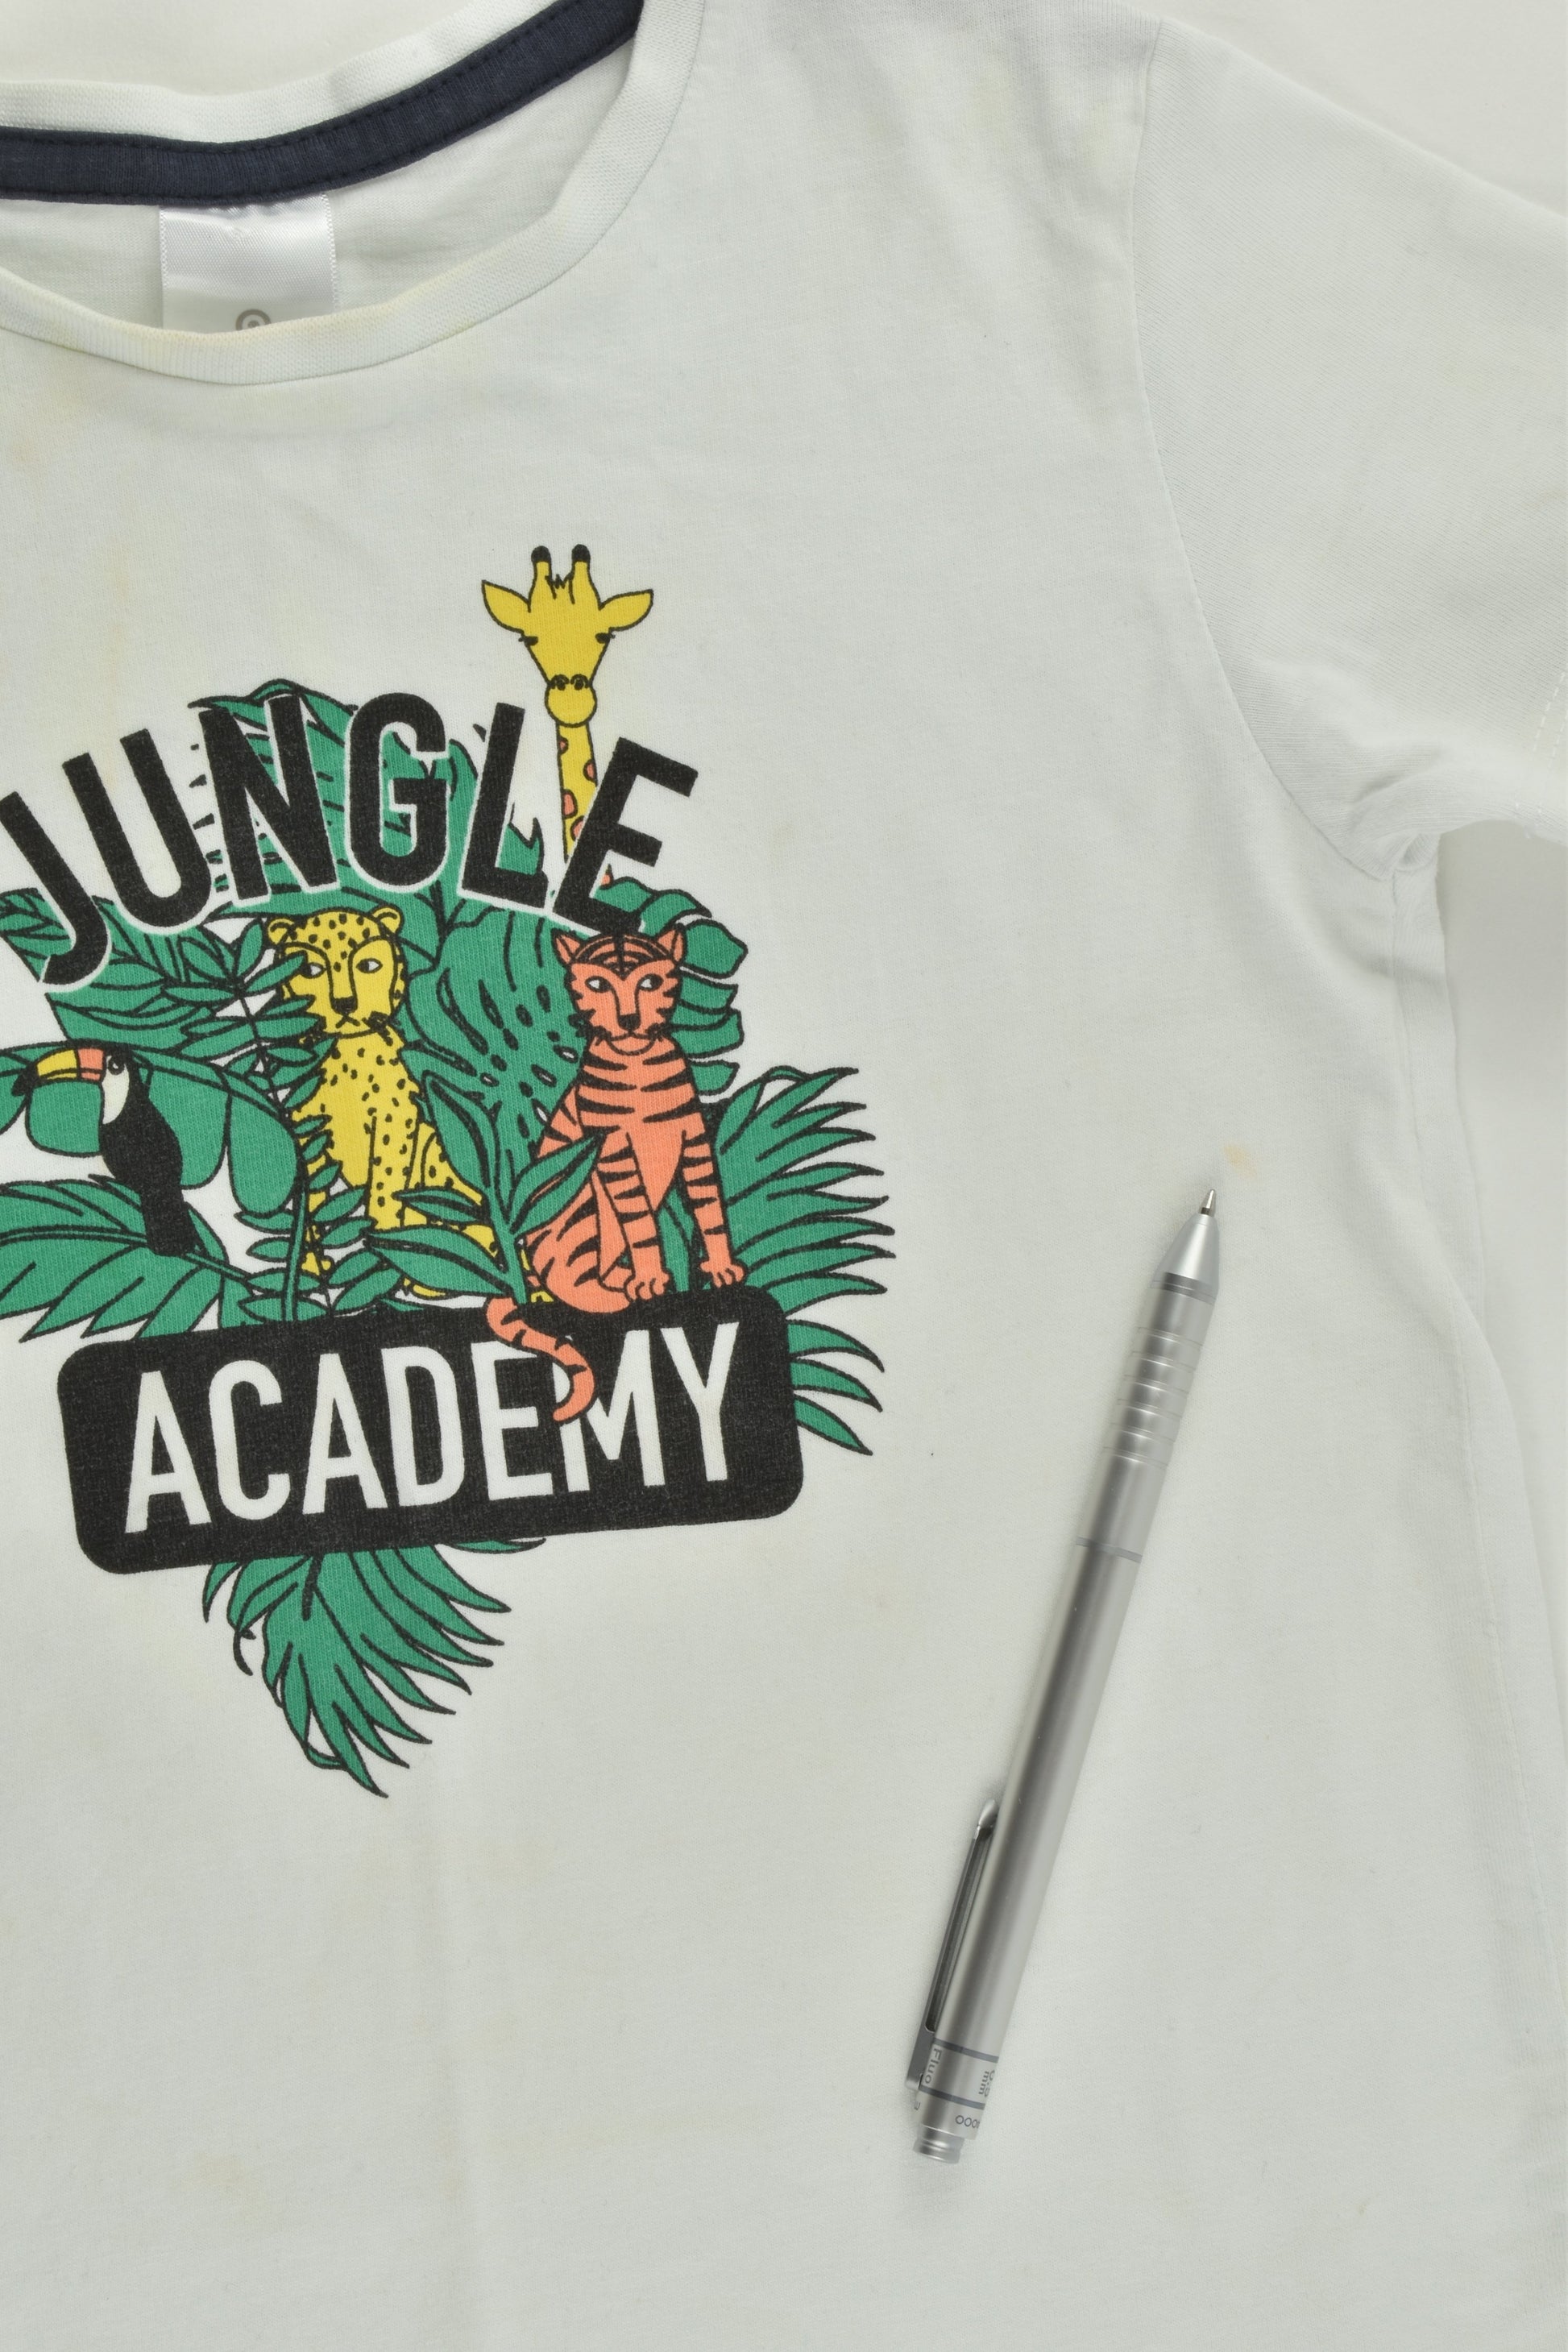 Target Size 3 'Jungle Academy' T-shirt